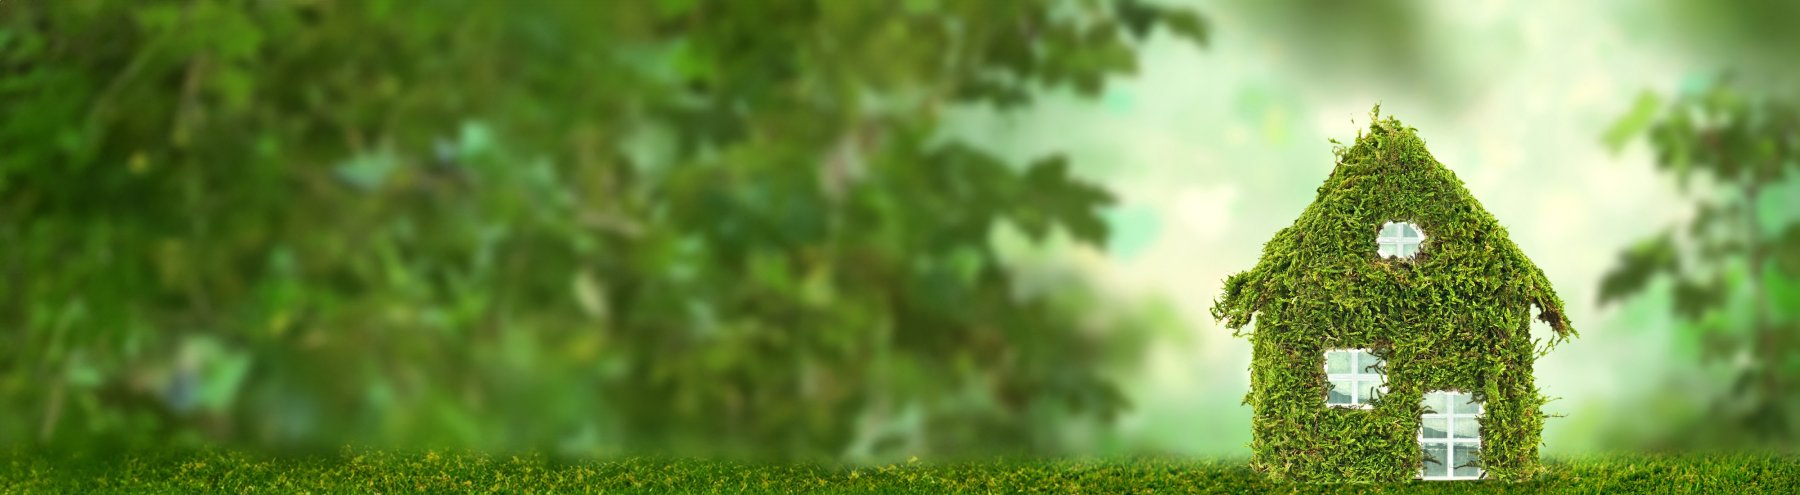 Ein kleines Modellhäuschen mit Moosbewachsen steht im grünen Wald.